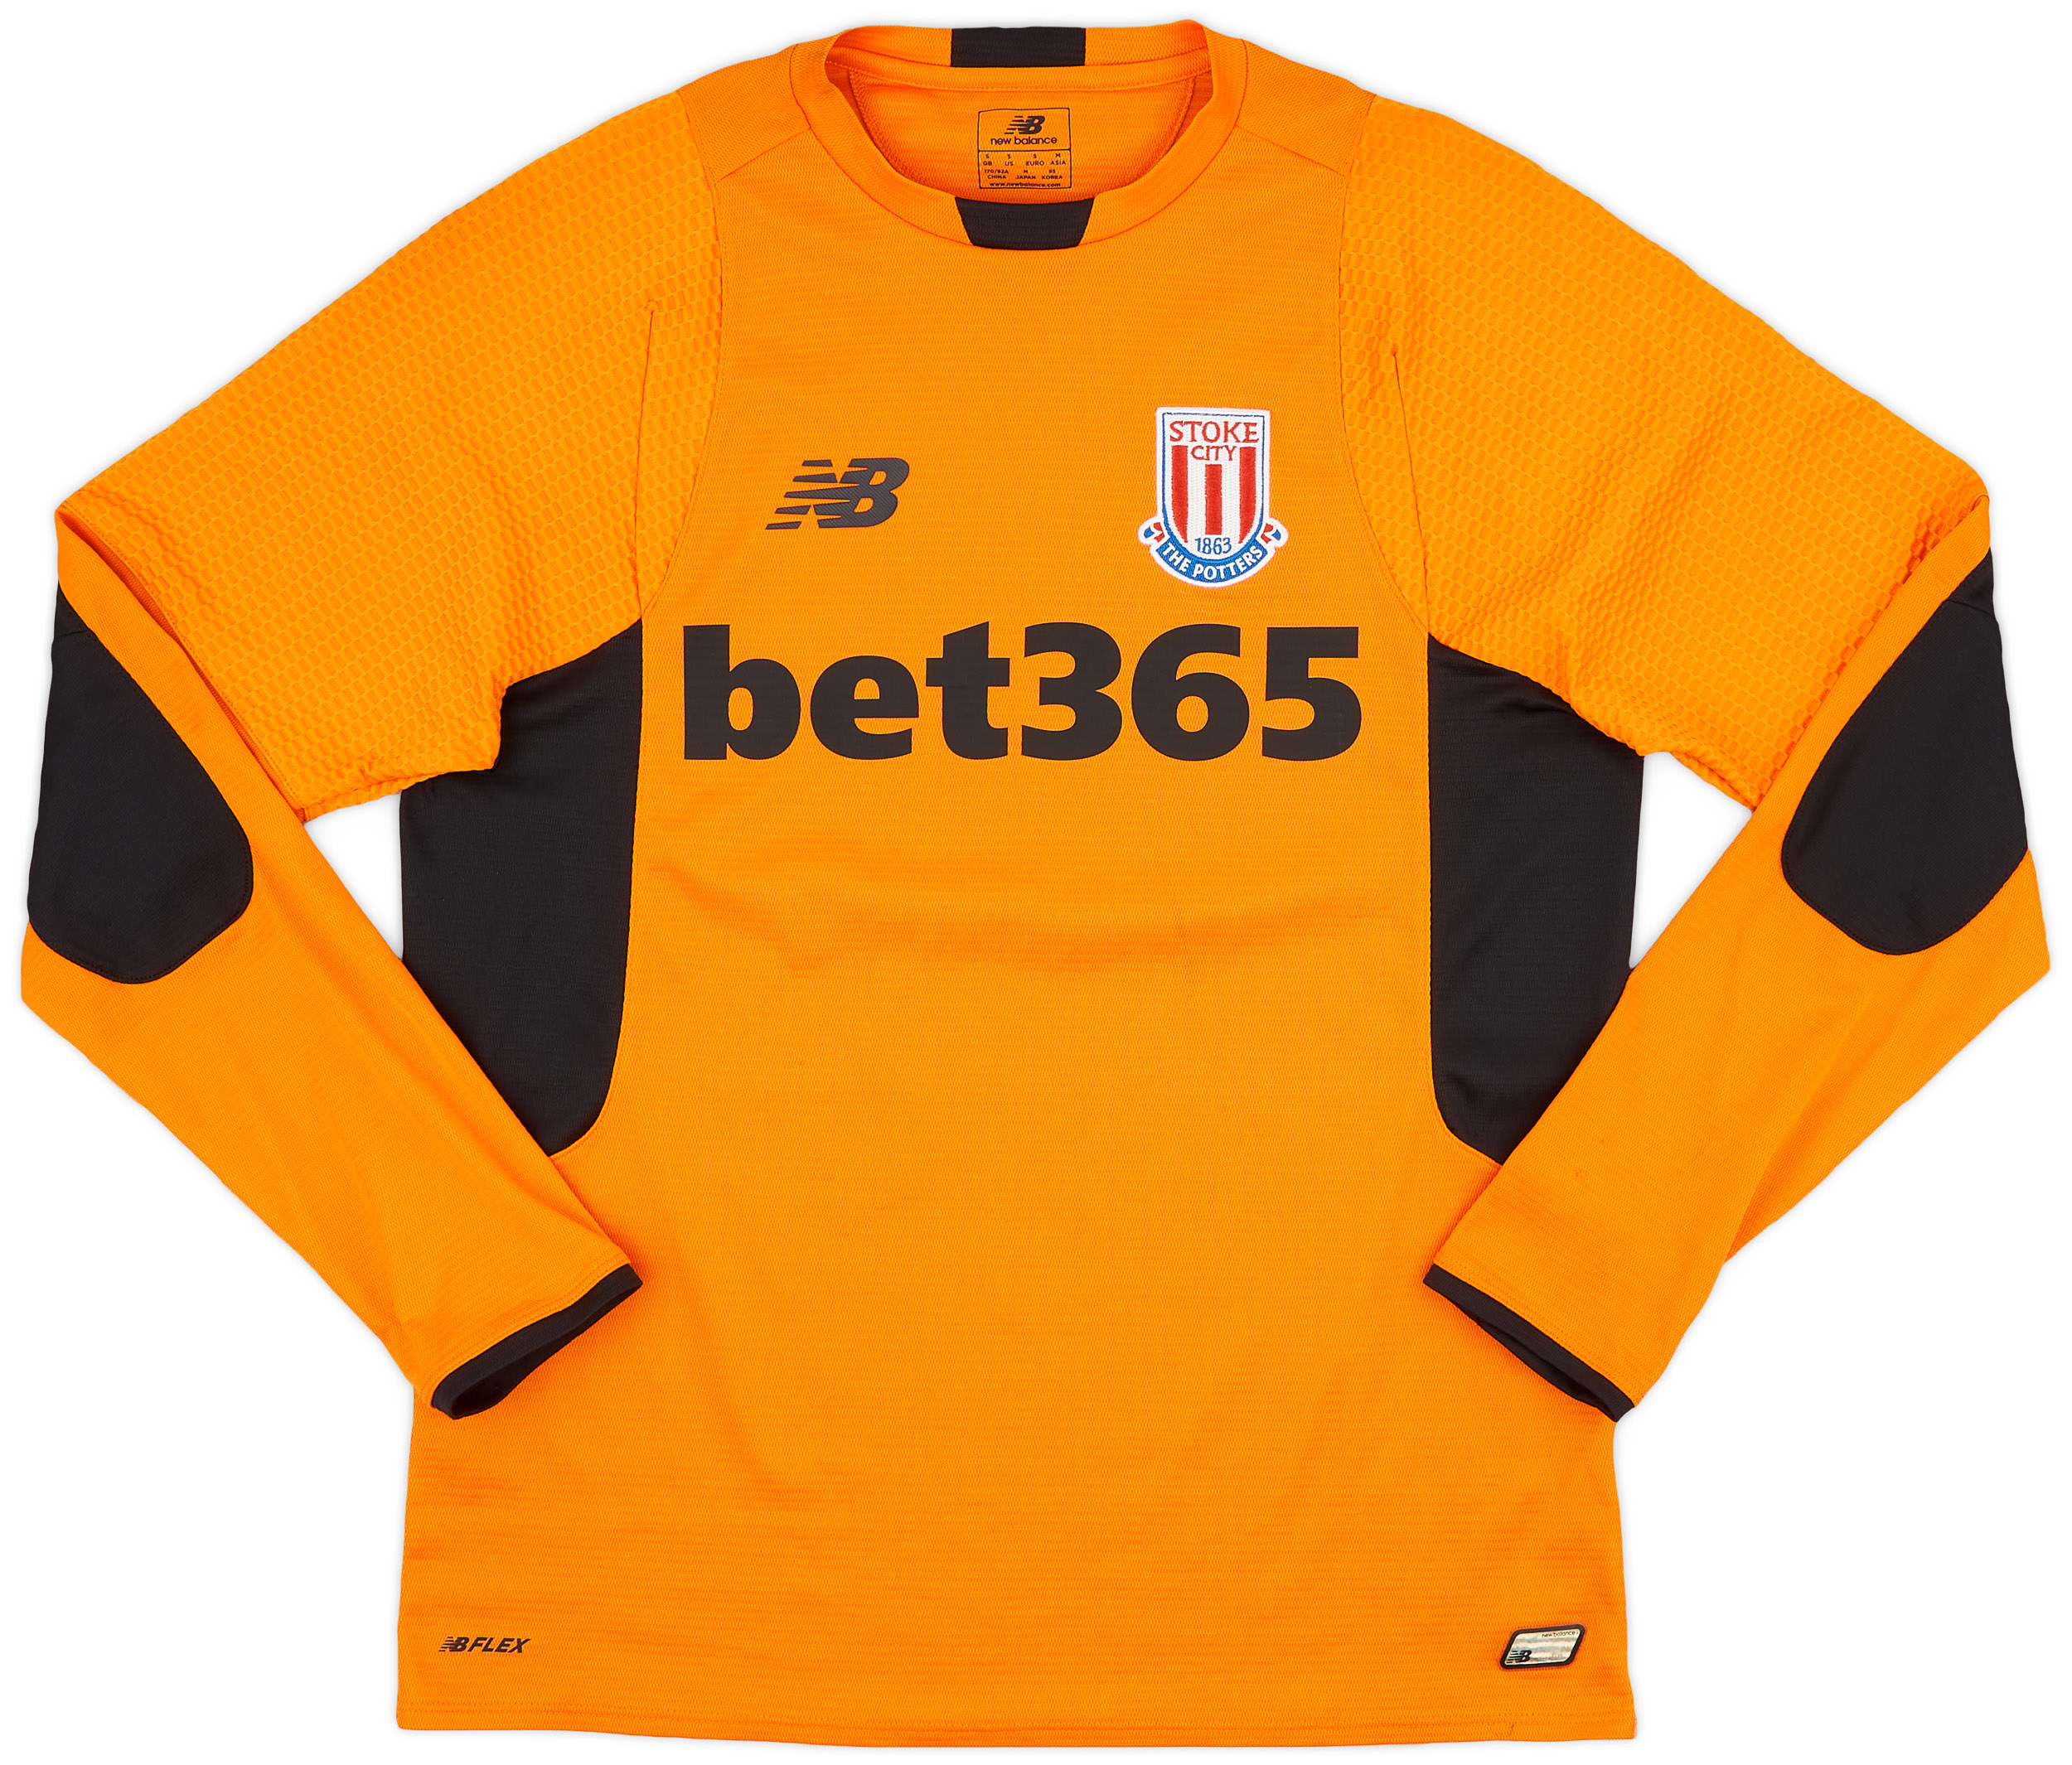 Stoke City  Goleiro camisa (Original)